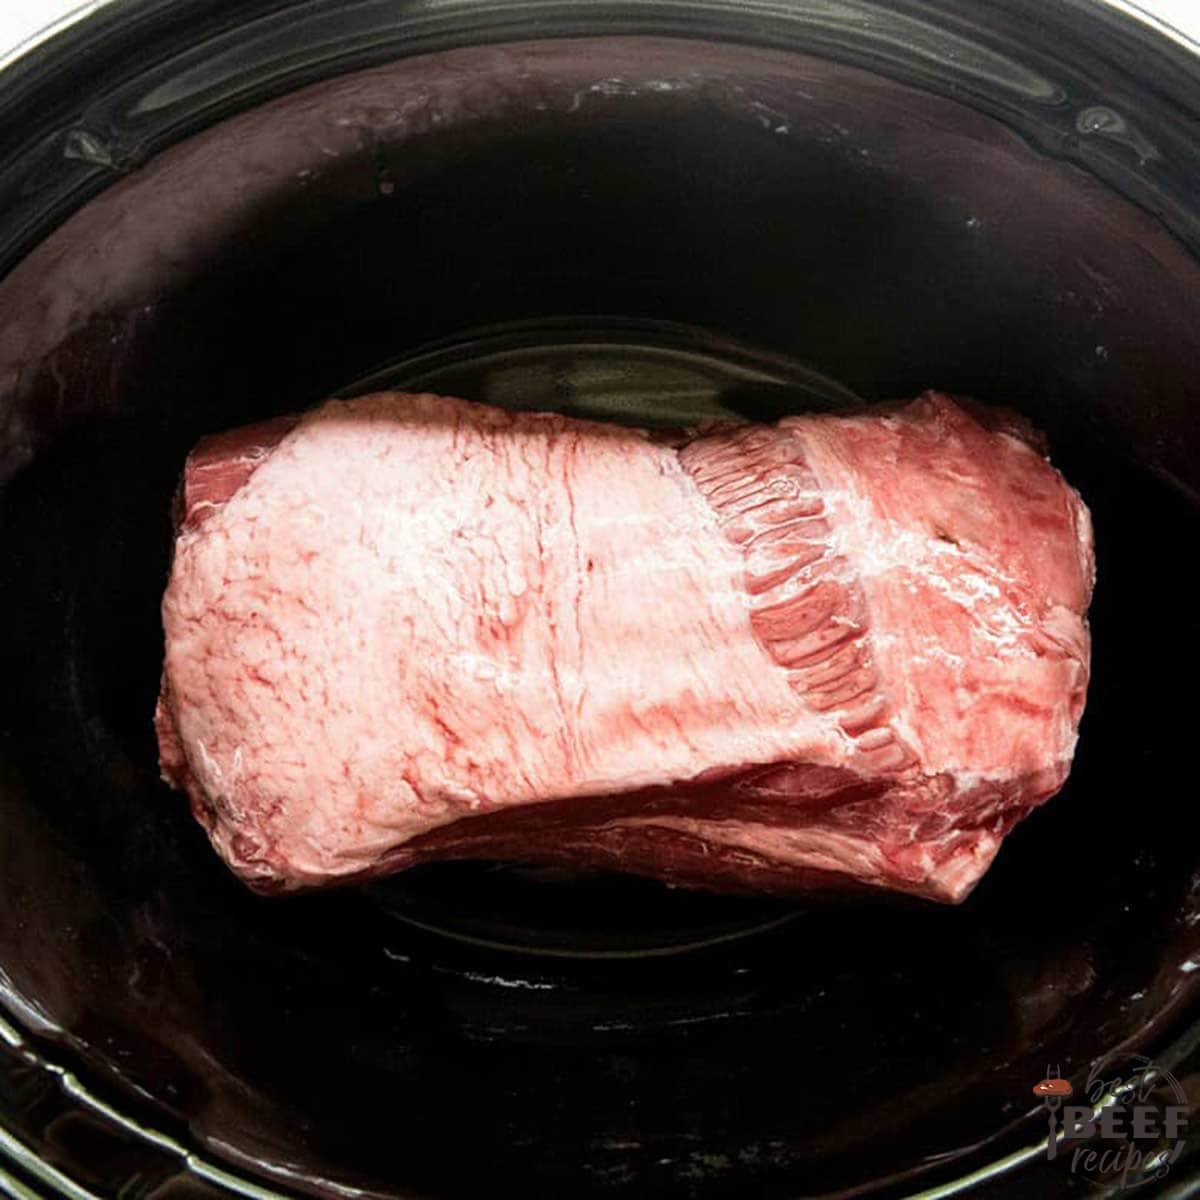 Beef brisket in slow cooker, unseasoned